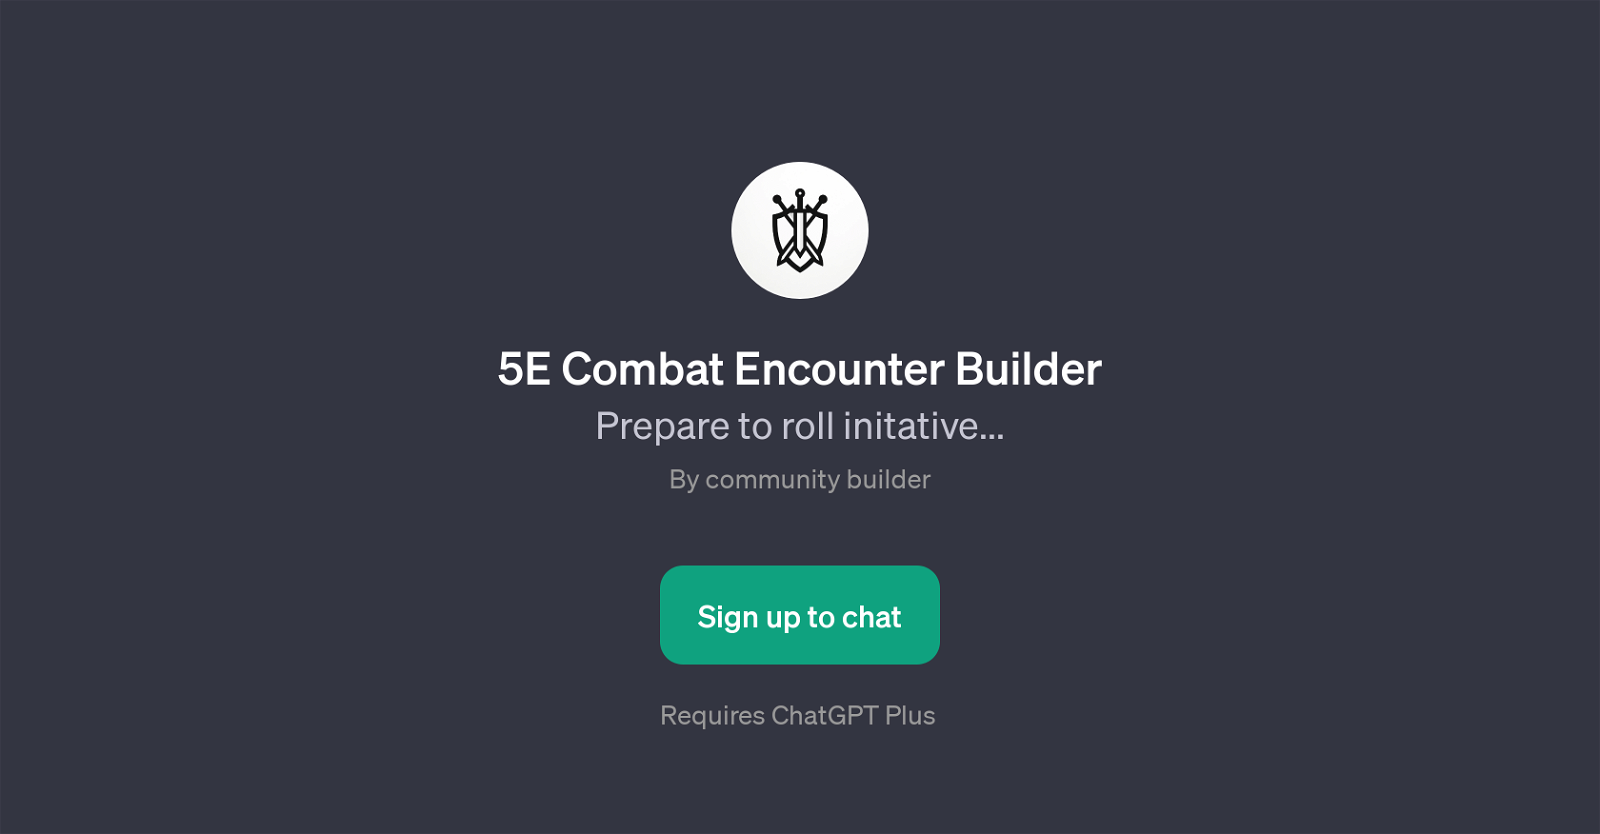 5E Combat Encounter Builder website